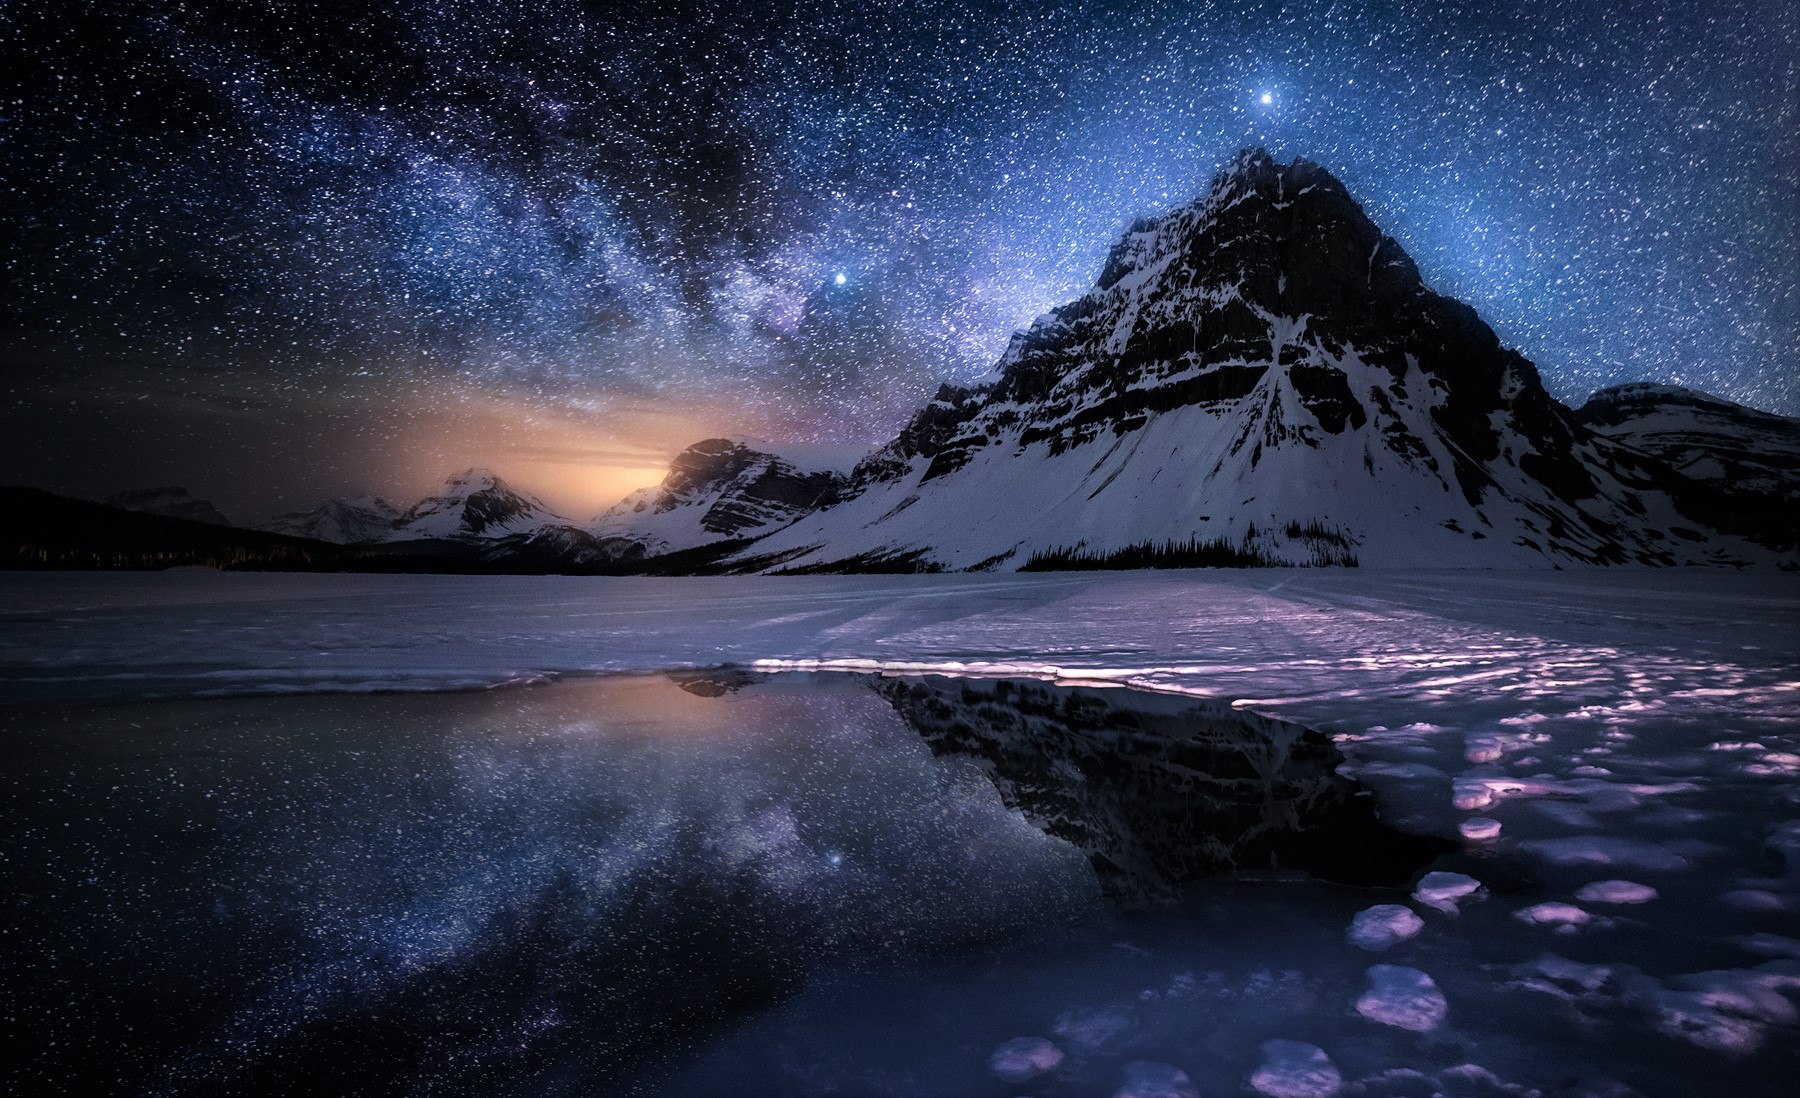 Bạn đã bao giờ tưởng tượng đứng trên đỉnh núi trong đêm đông, nhìn thấy hàng ngàn vì sao lấp lánh trên bầu trời chưa? Hãy xem bức ảnh liên quan để cảm nhận sự tuyệt vời của nó!